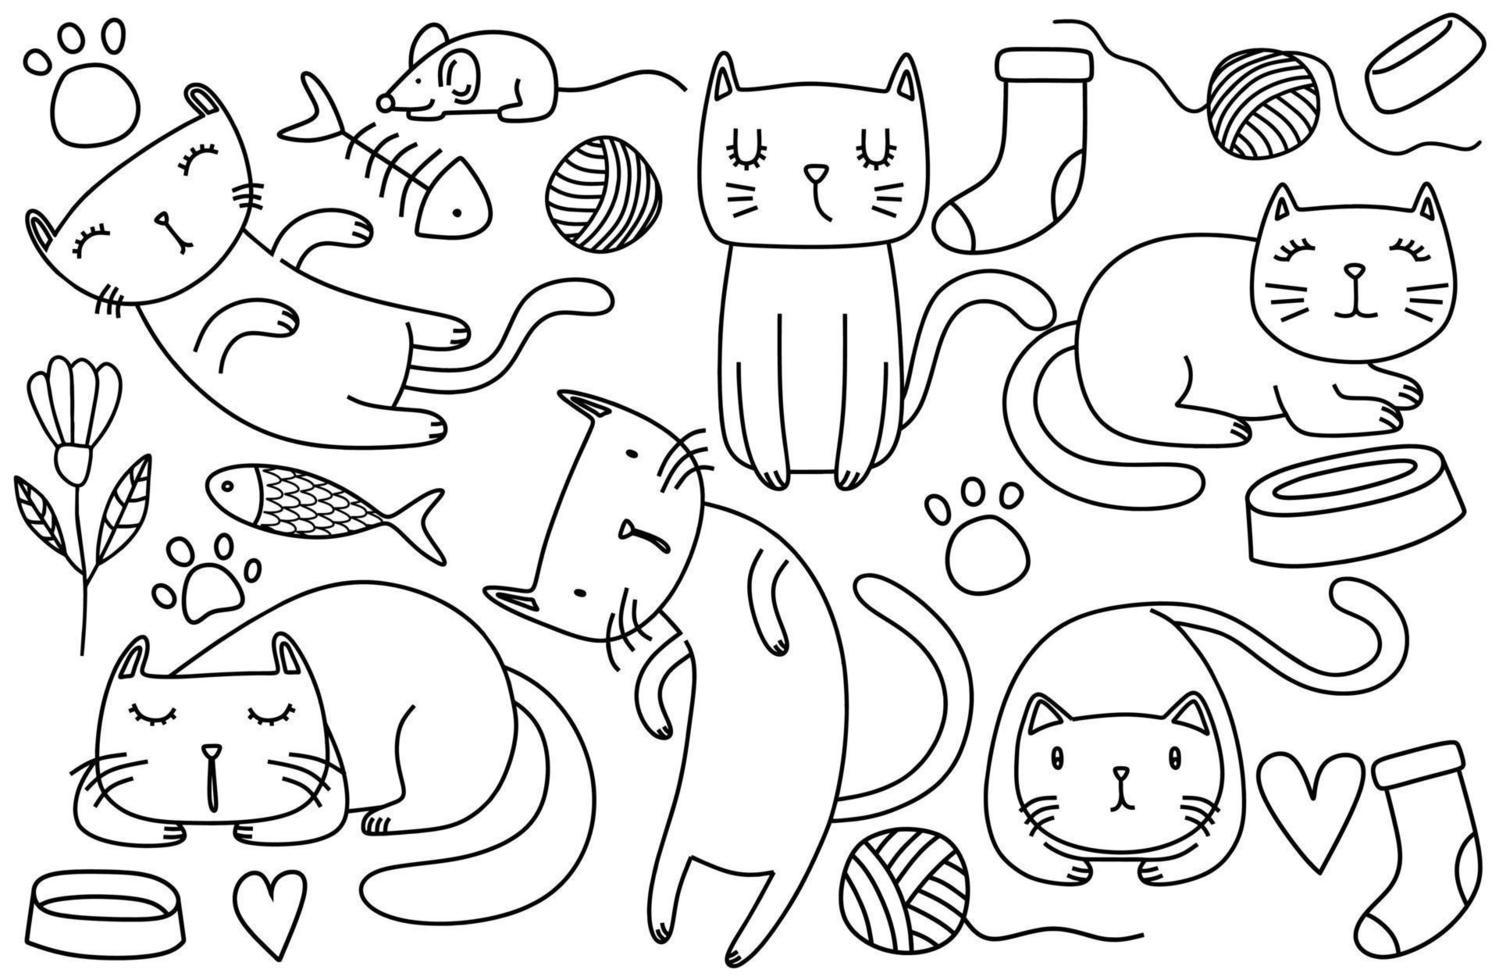 croquis drôle de chats doodle. illustration vectorielle vecteur